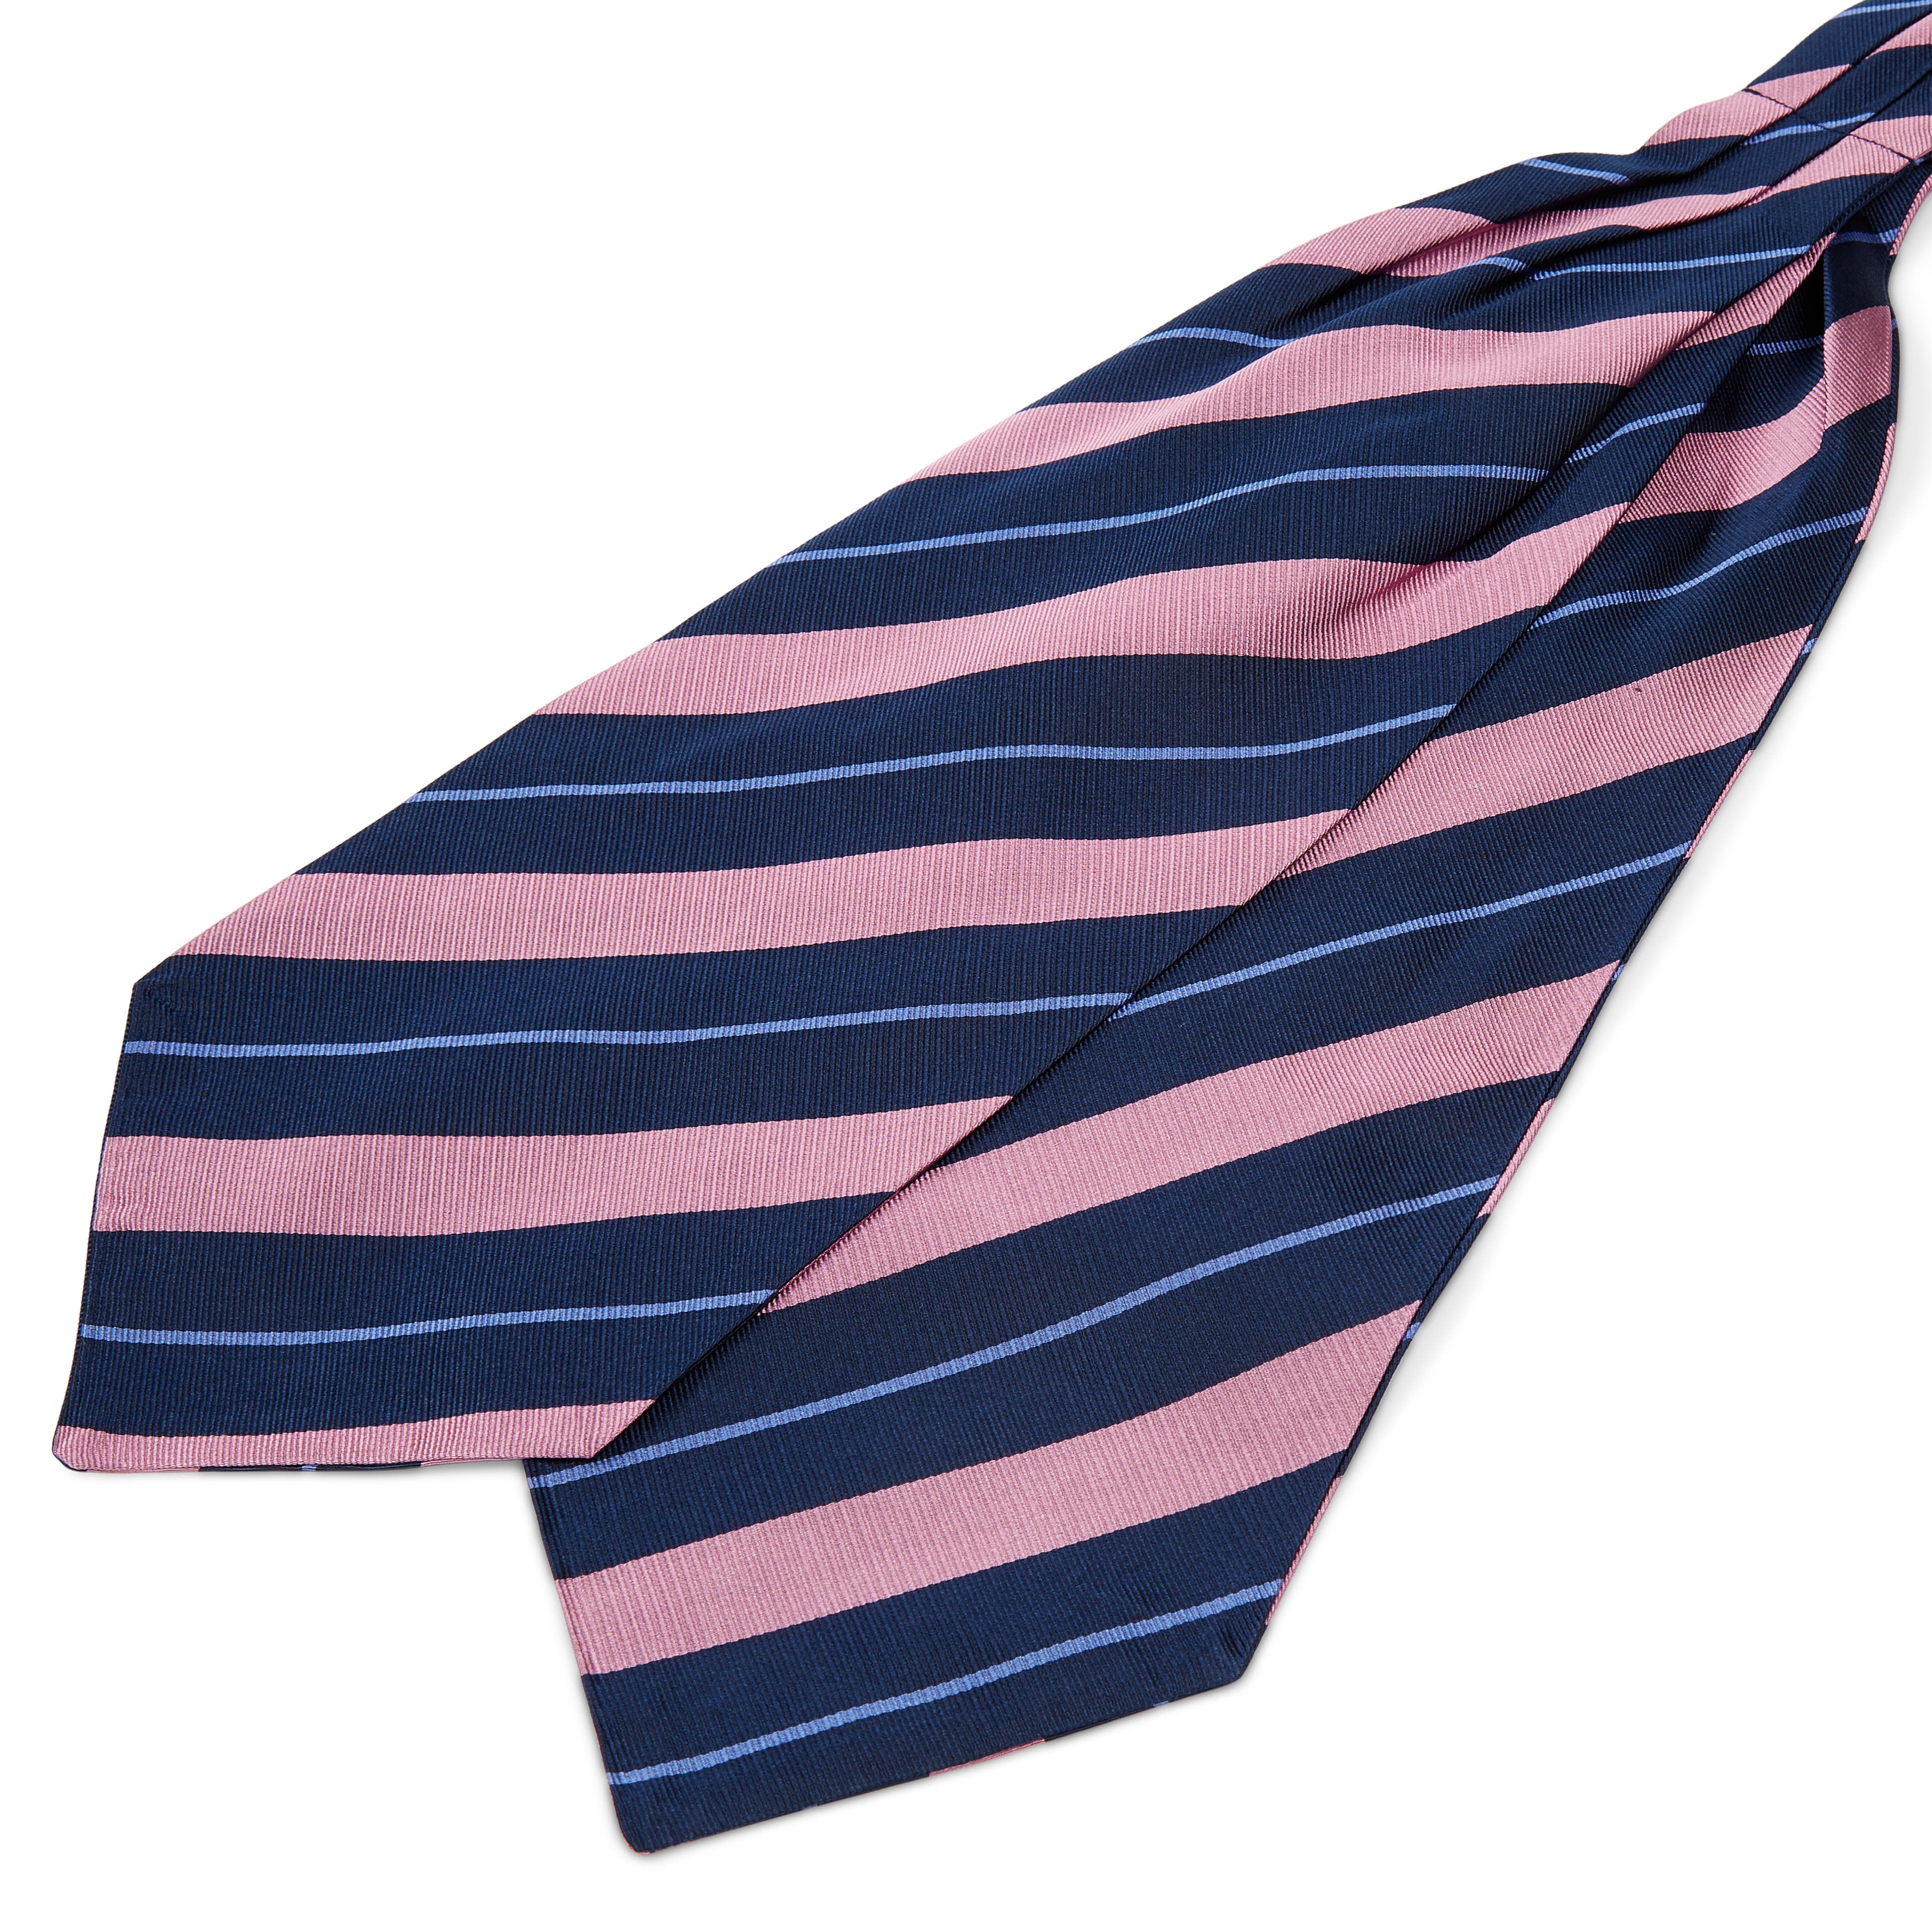 Cravată din mătase bleumarin cu dungi roz și albastru pastel